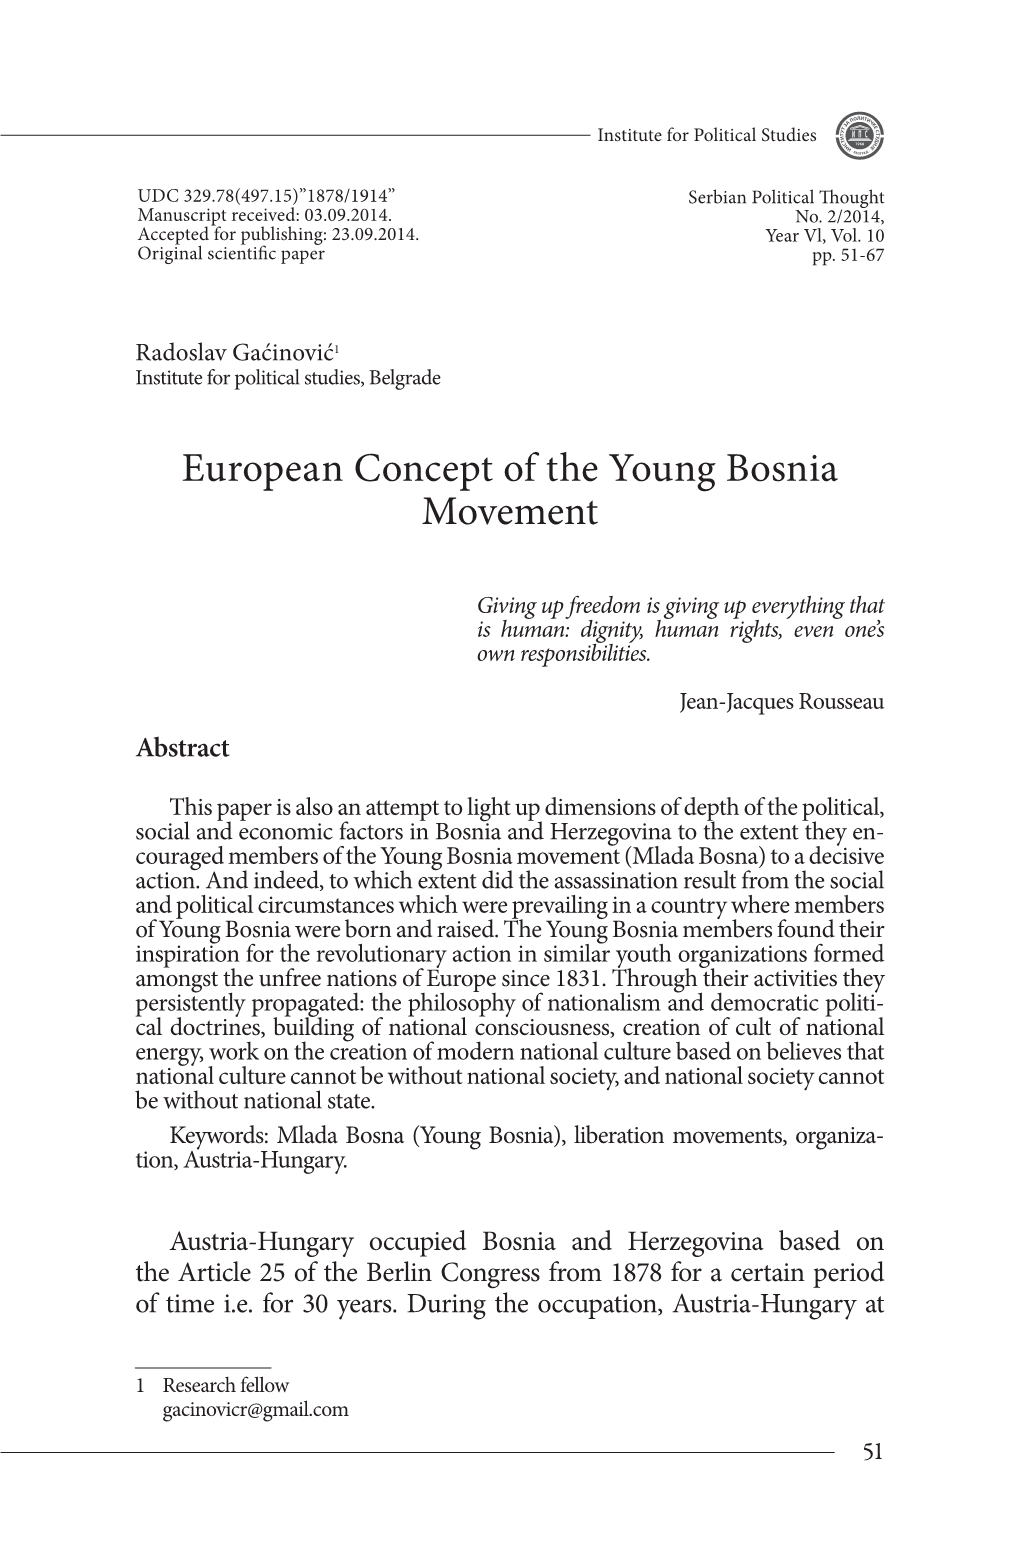 European Concept of the Young Bosnia Movement